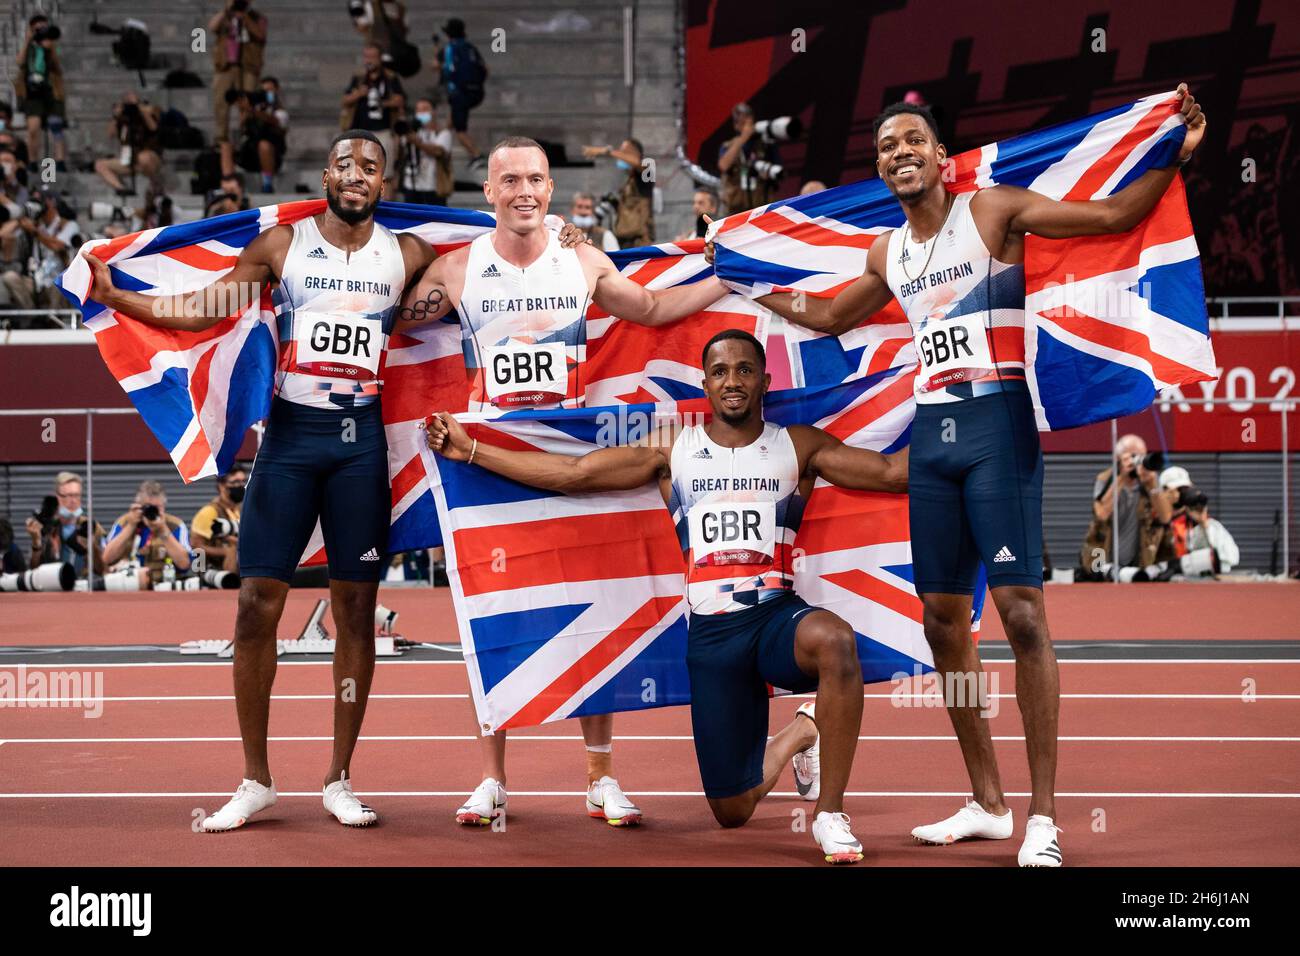 Großbritanniens Männer-Staffelteam mit 4x100 m-Übergröße erspielen bei den olympischen spielen in Tokio Silber. Mitchell-Blake, Kitty, Utah, Hughes Stockfoto